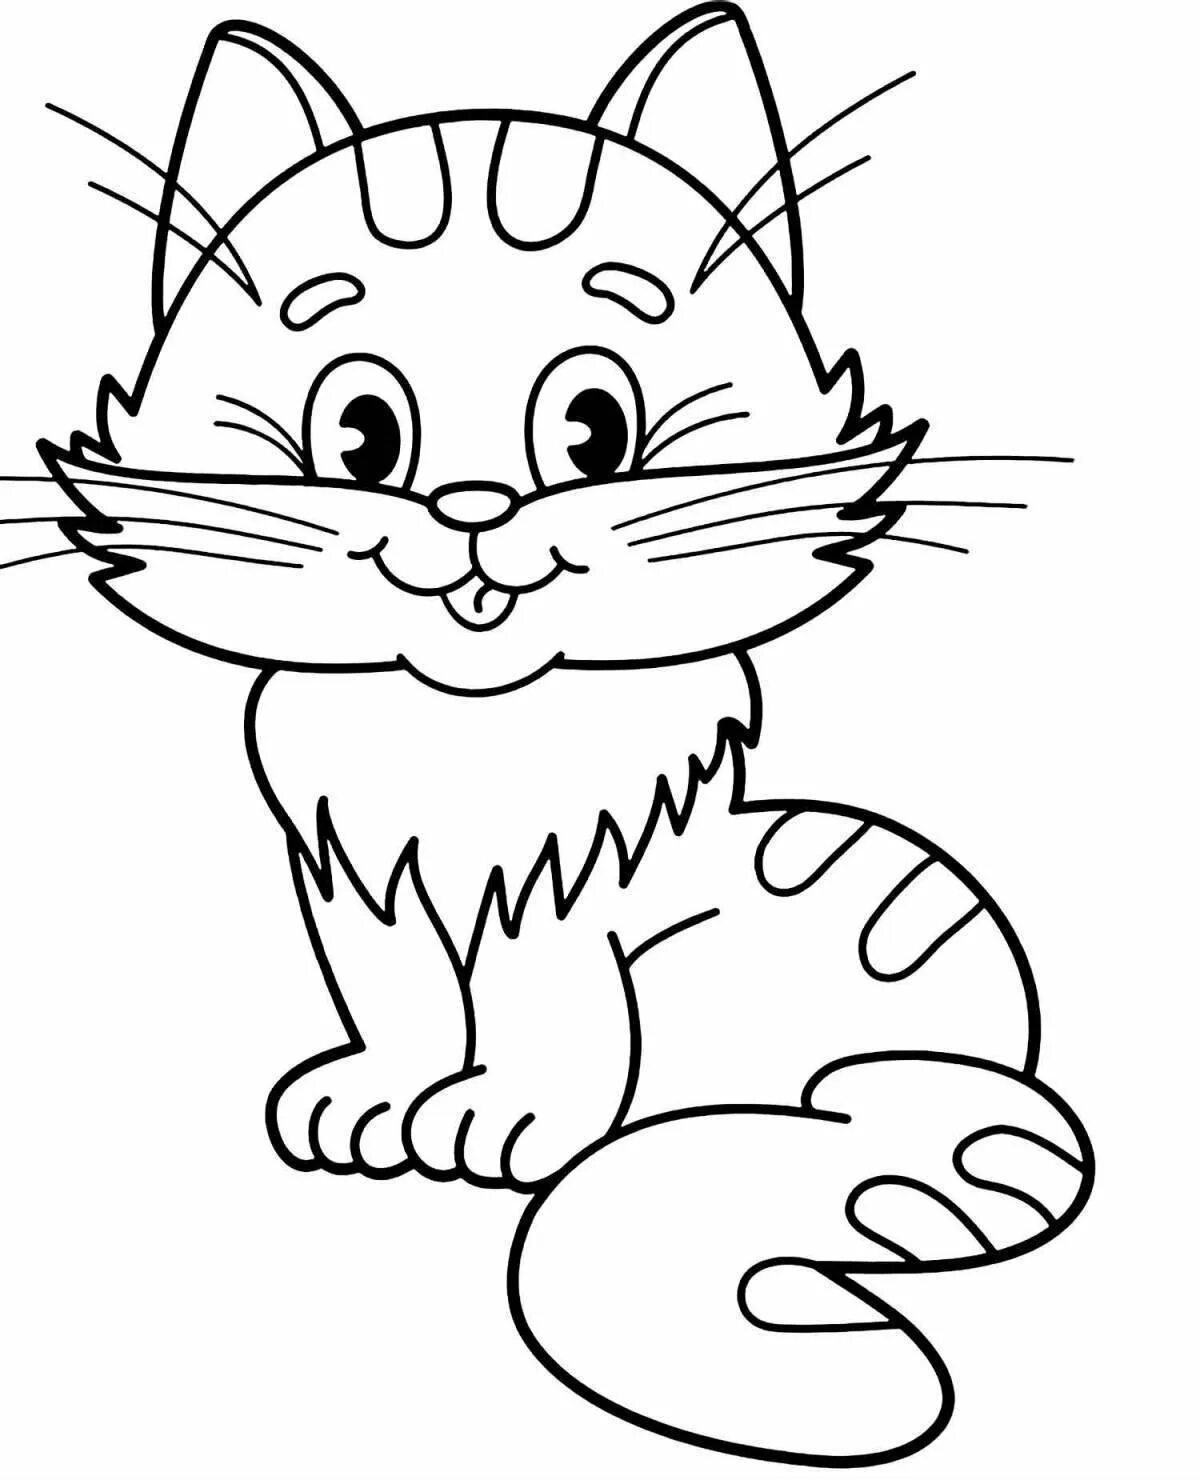 Котики раскраска для детей 3 4 лет. Раскраска. Котики. Раскраска кот. Котик раскраска для детей. Котенок. Раскраска.